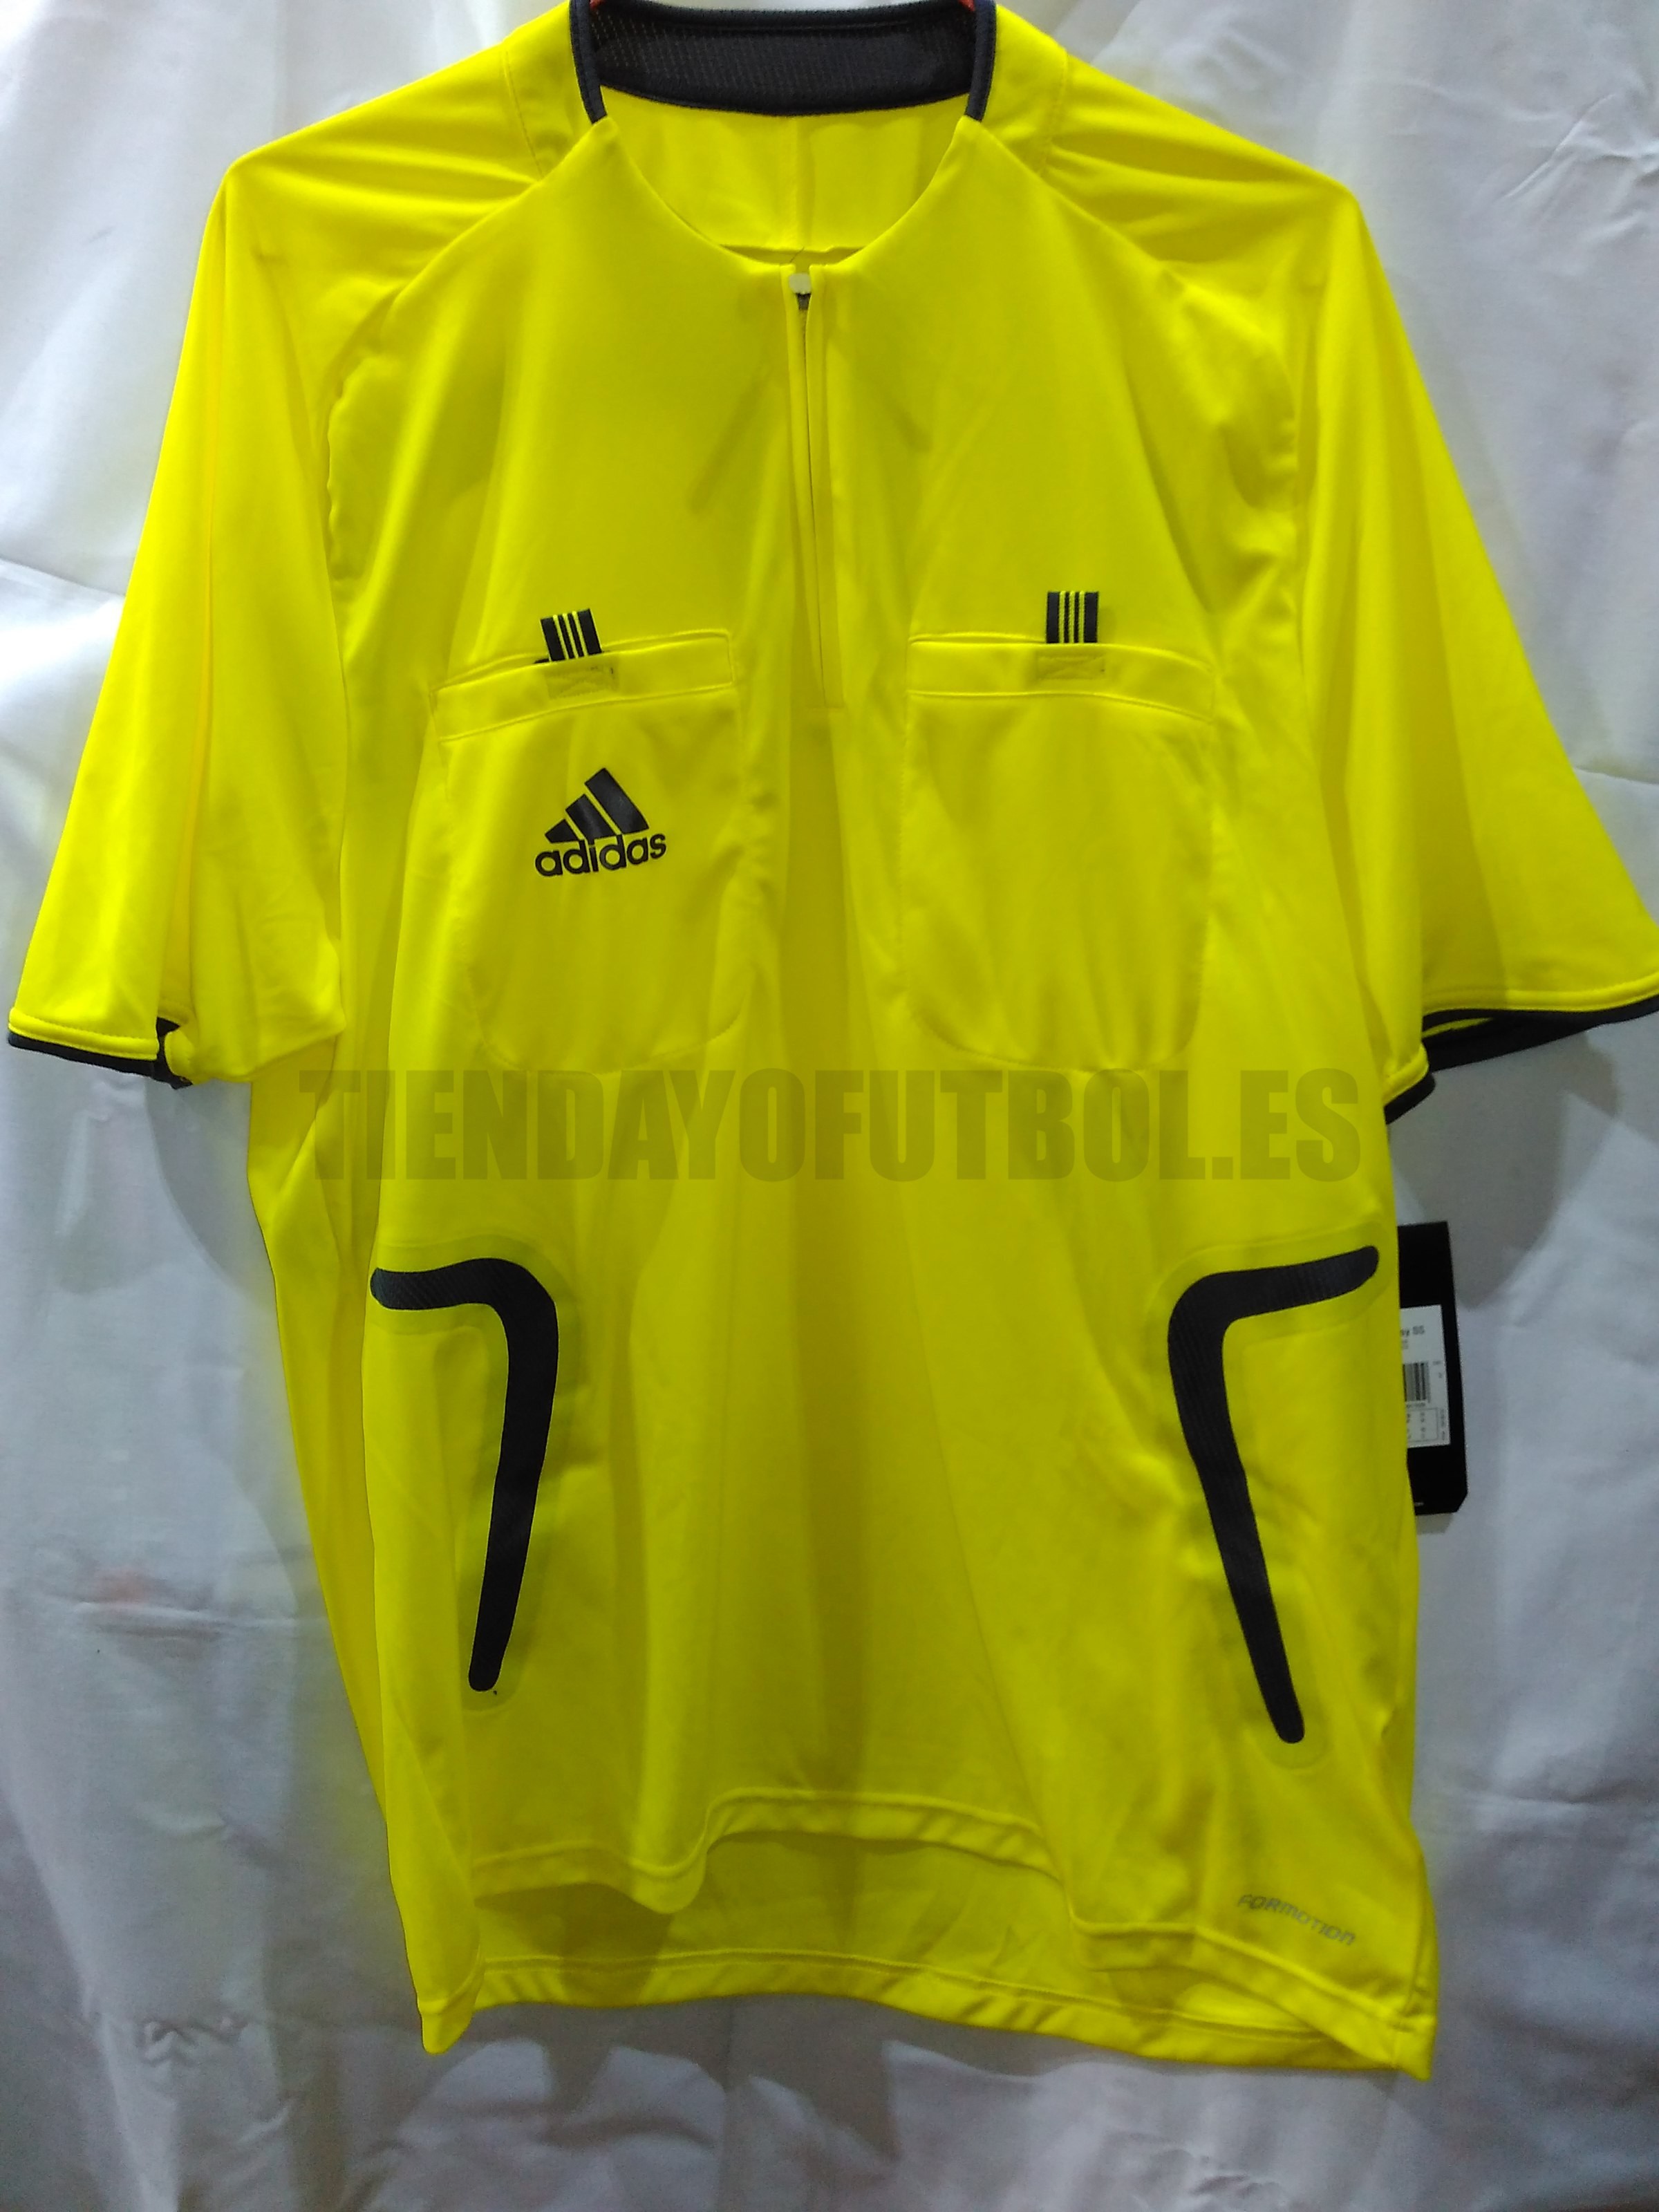 Arbitro su Camiseta Adidas camiseta Oficial Arbitro l Camiseta amarilla  arbitro de Futbol